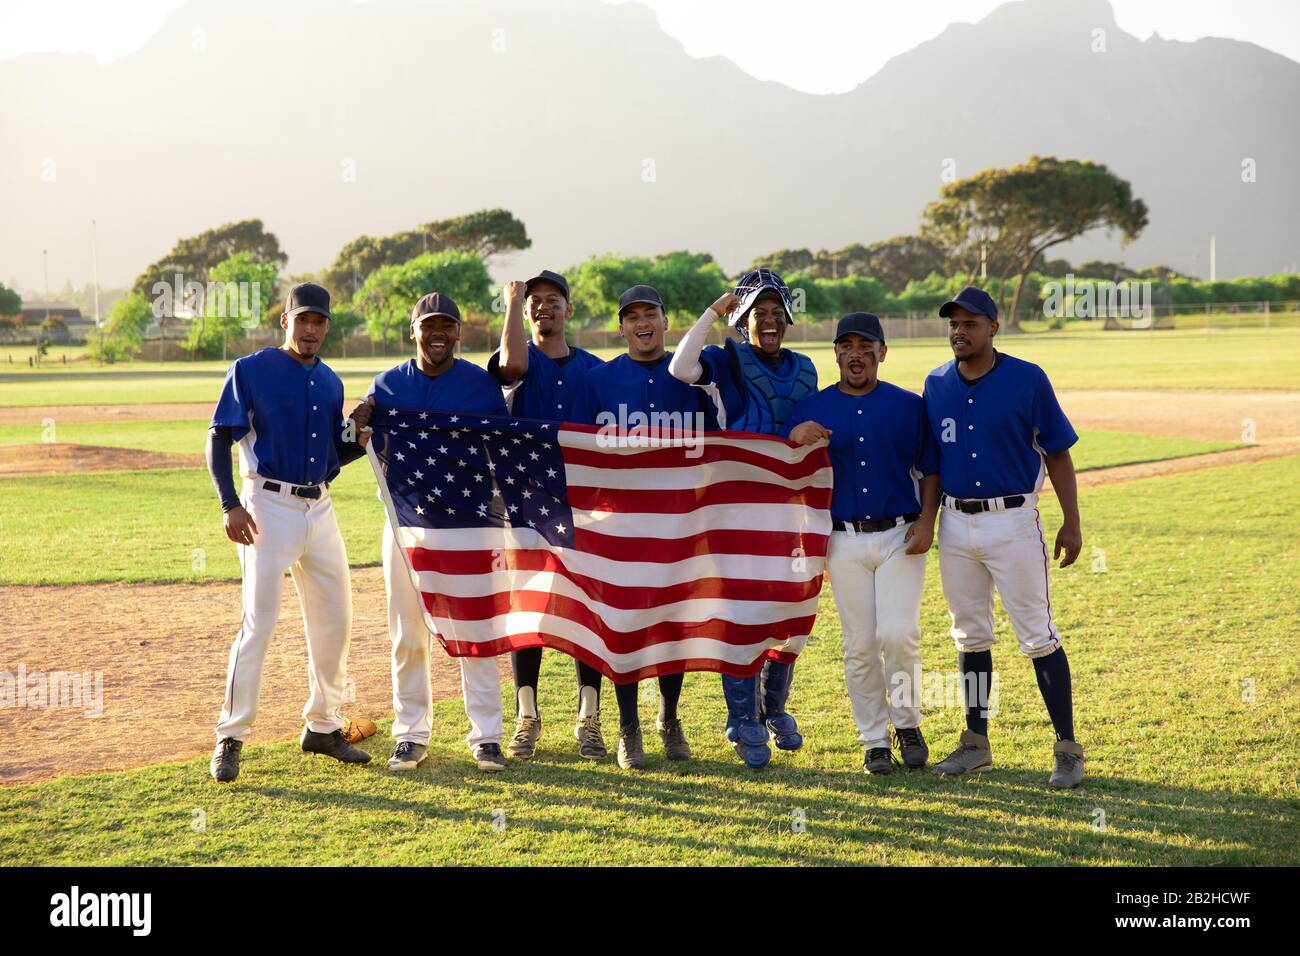 Baseballspieler, die mit einer amerikanischen Flagge auf Linie stehen Stockfoto